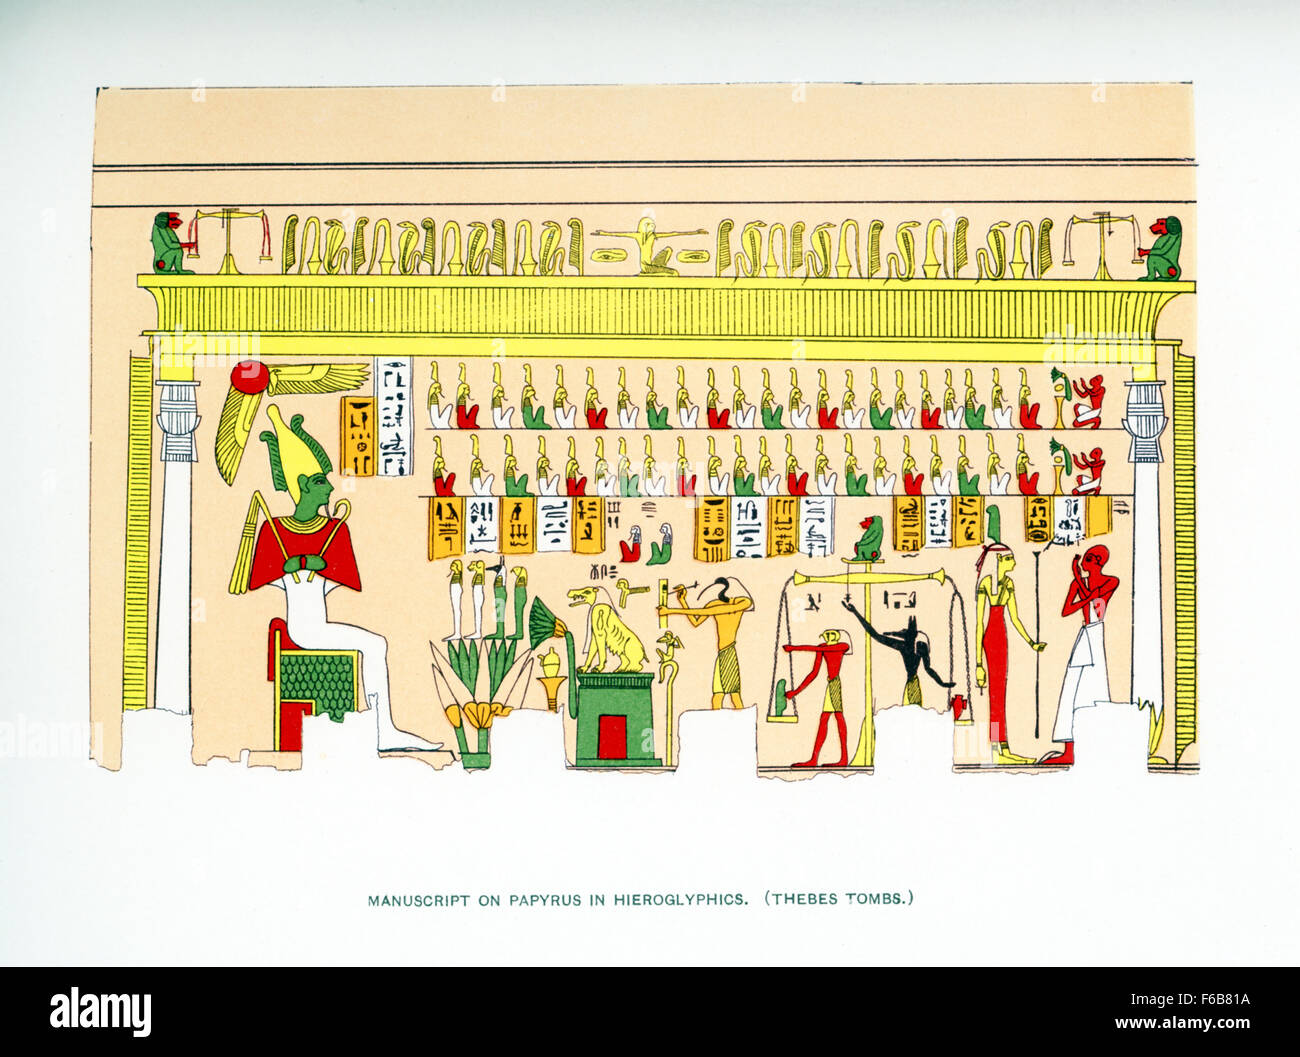 L'on voit ici est un manuscrit sur papyrus tiré de hiéroglyphes et d'art trouvés dans une ancienne tombe égyptienne à Thèbes, avec ses nombreux des tombeaux, dans le sud de l'Egypte. Cette illustration date de 1903 et a paru dans le livre Histoire de l'Égypte par l'égyptologue français Gaston Maspero. Il rassemble de nombreuses scènes trouvées dans la tombe. Parmi ceux-ci sont le dieu des enfers (Osiris sa peau couleur verte, symbolisant la renaissance) assis à gauche. En face sont les quatre fils d'Horus (Horus était le fils d'OSIRIS). Le dieu de l'écriture Thot est l'inscription sur un un morceau rectangulaire de papyrus. Banque D'Images